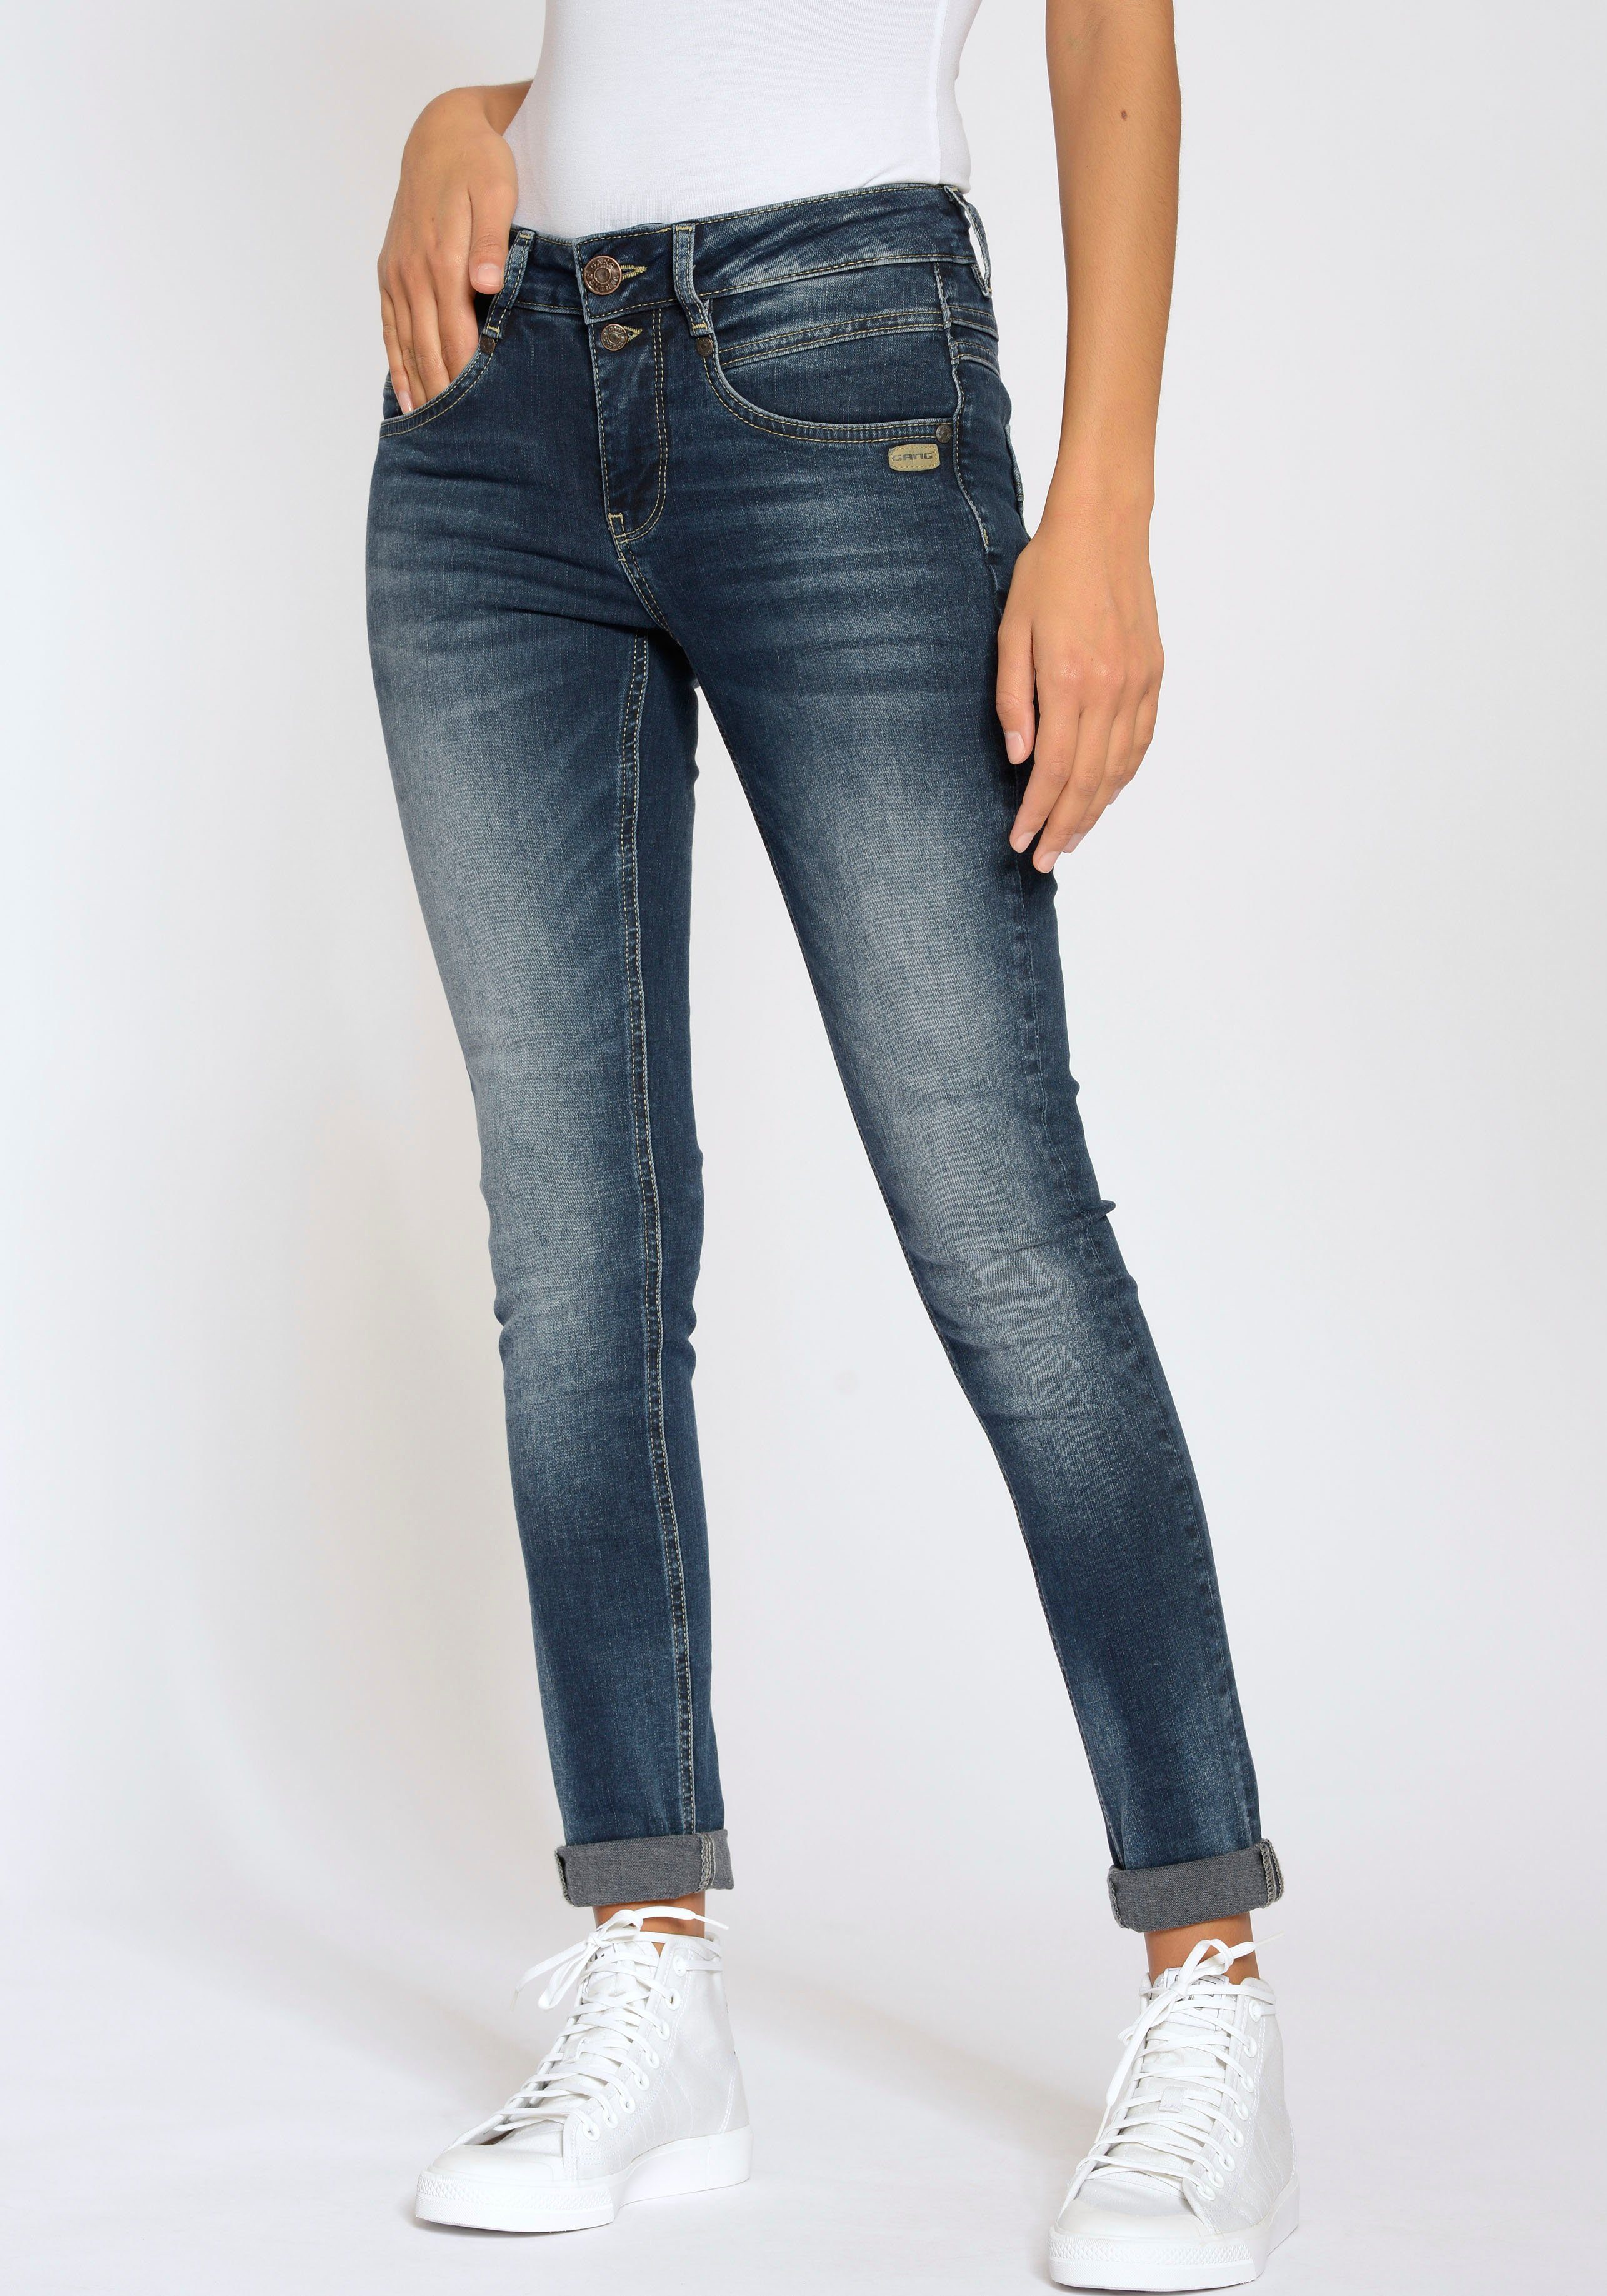 GANG Skinny-fit-Jeans 94MORA mit 3-Knopf-Verschluss blue) Passe (dark Dark vorne Wash Heavy und